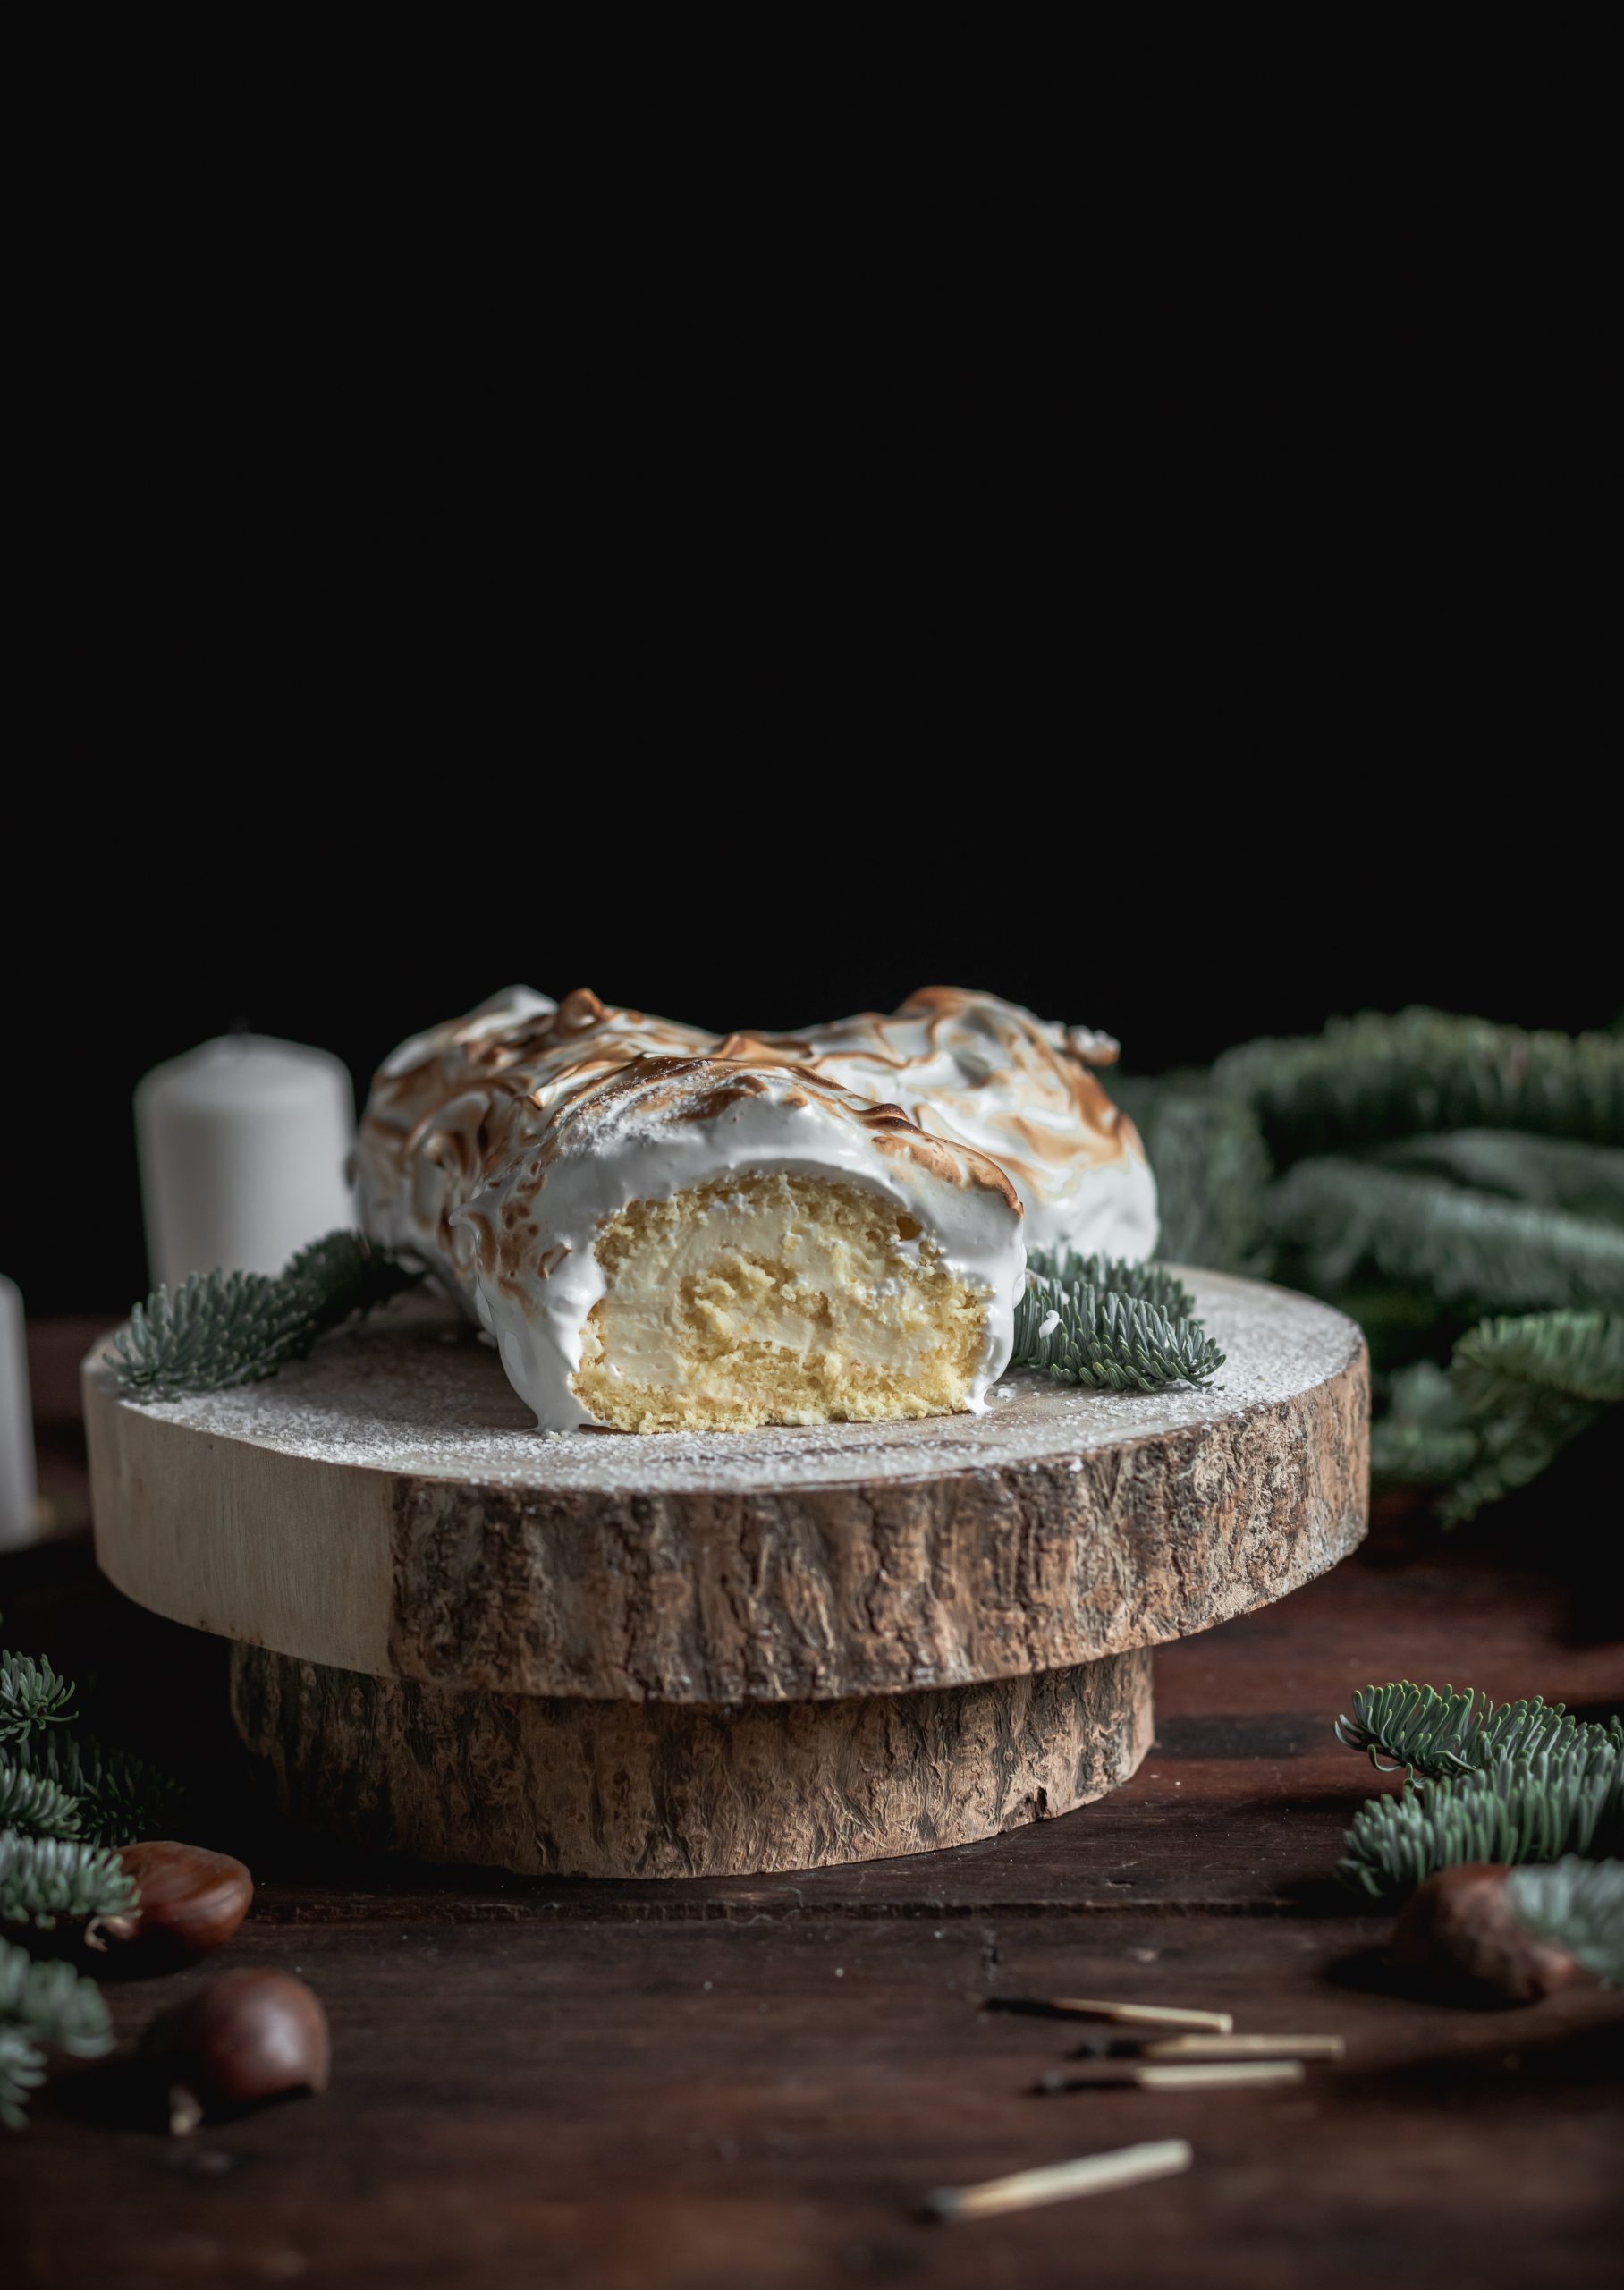 Bûche de Noël au citron meringuée • Lemon-cream meringue Yule log